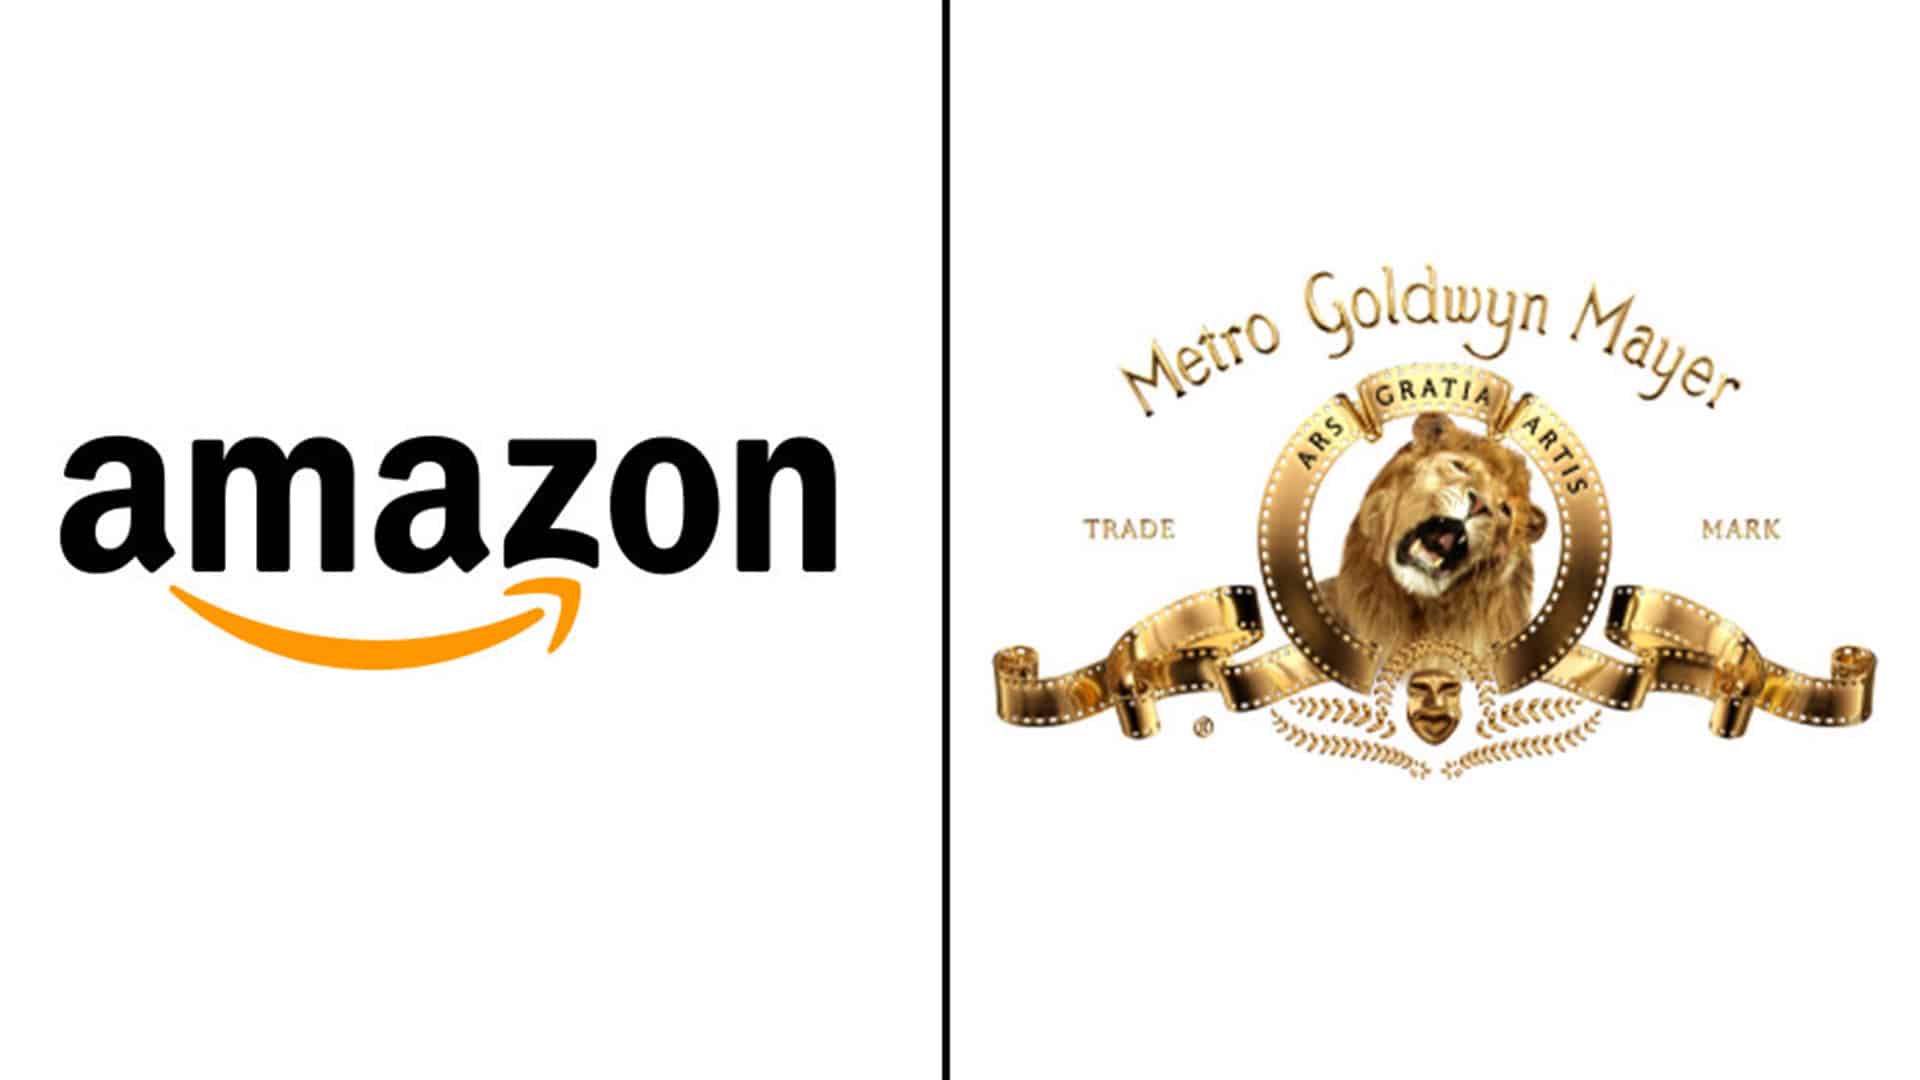 Amazon spoločnosť MGM